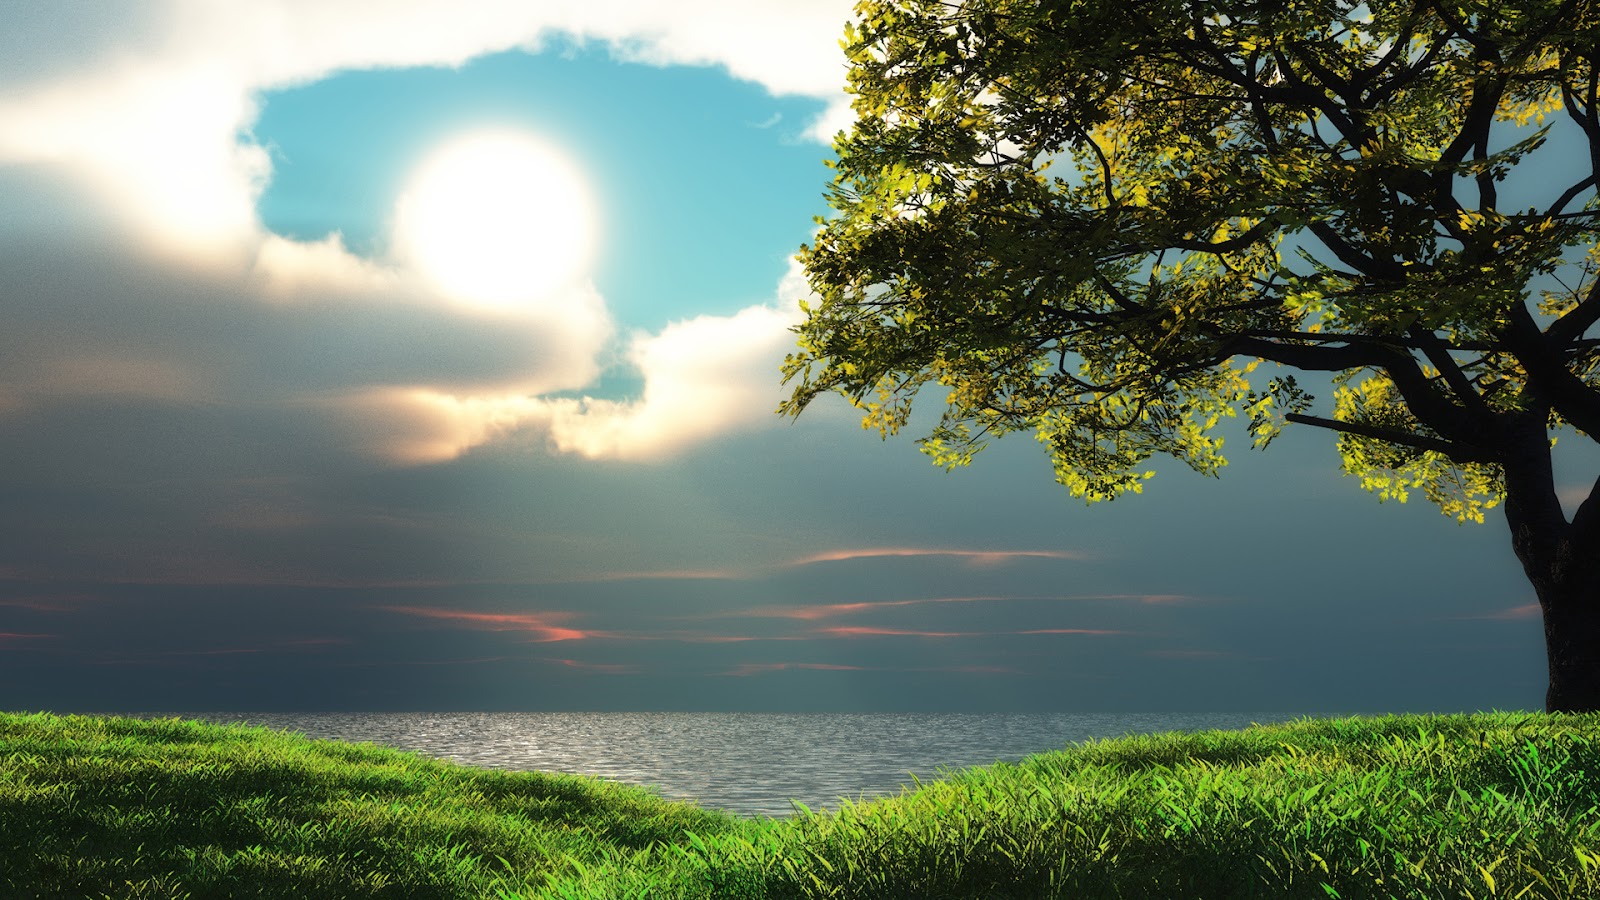 Nền cây (Tree background) Với hình nền cây xanh mát này, bạn sẽ tận hưởng được cảm giác thanh bình tràn đầy sinh lực của thiên nhiên. Bạn có thể lắp đặt nó vào màn hình điện thoại hoặc máy tính của mình để có thể ngắm nhìn từng chút xanh tươi đáng yêu từ hình ảnh này.